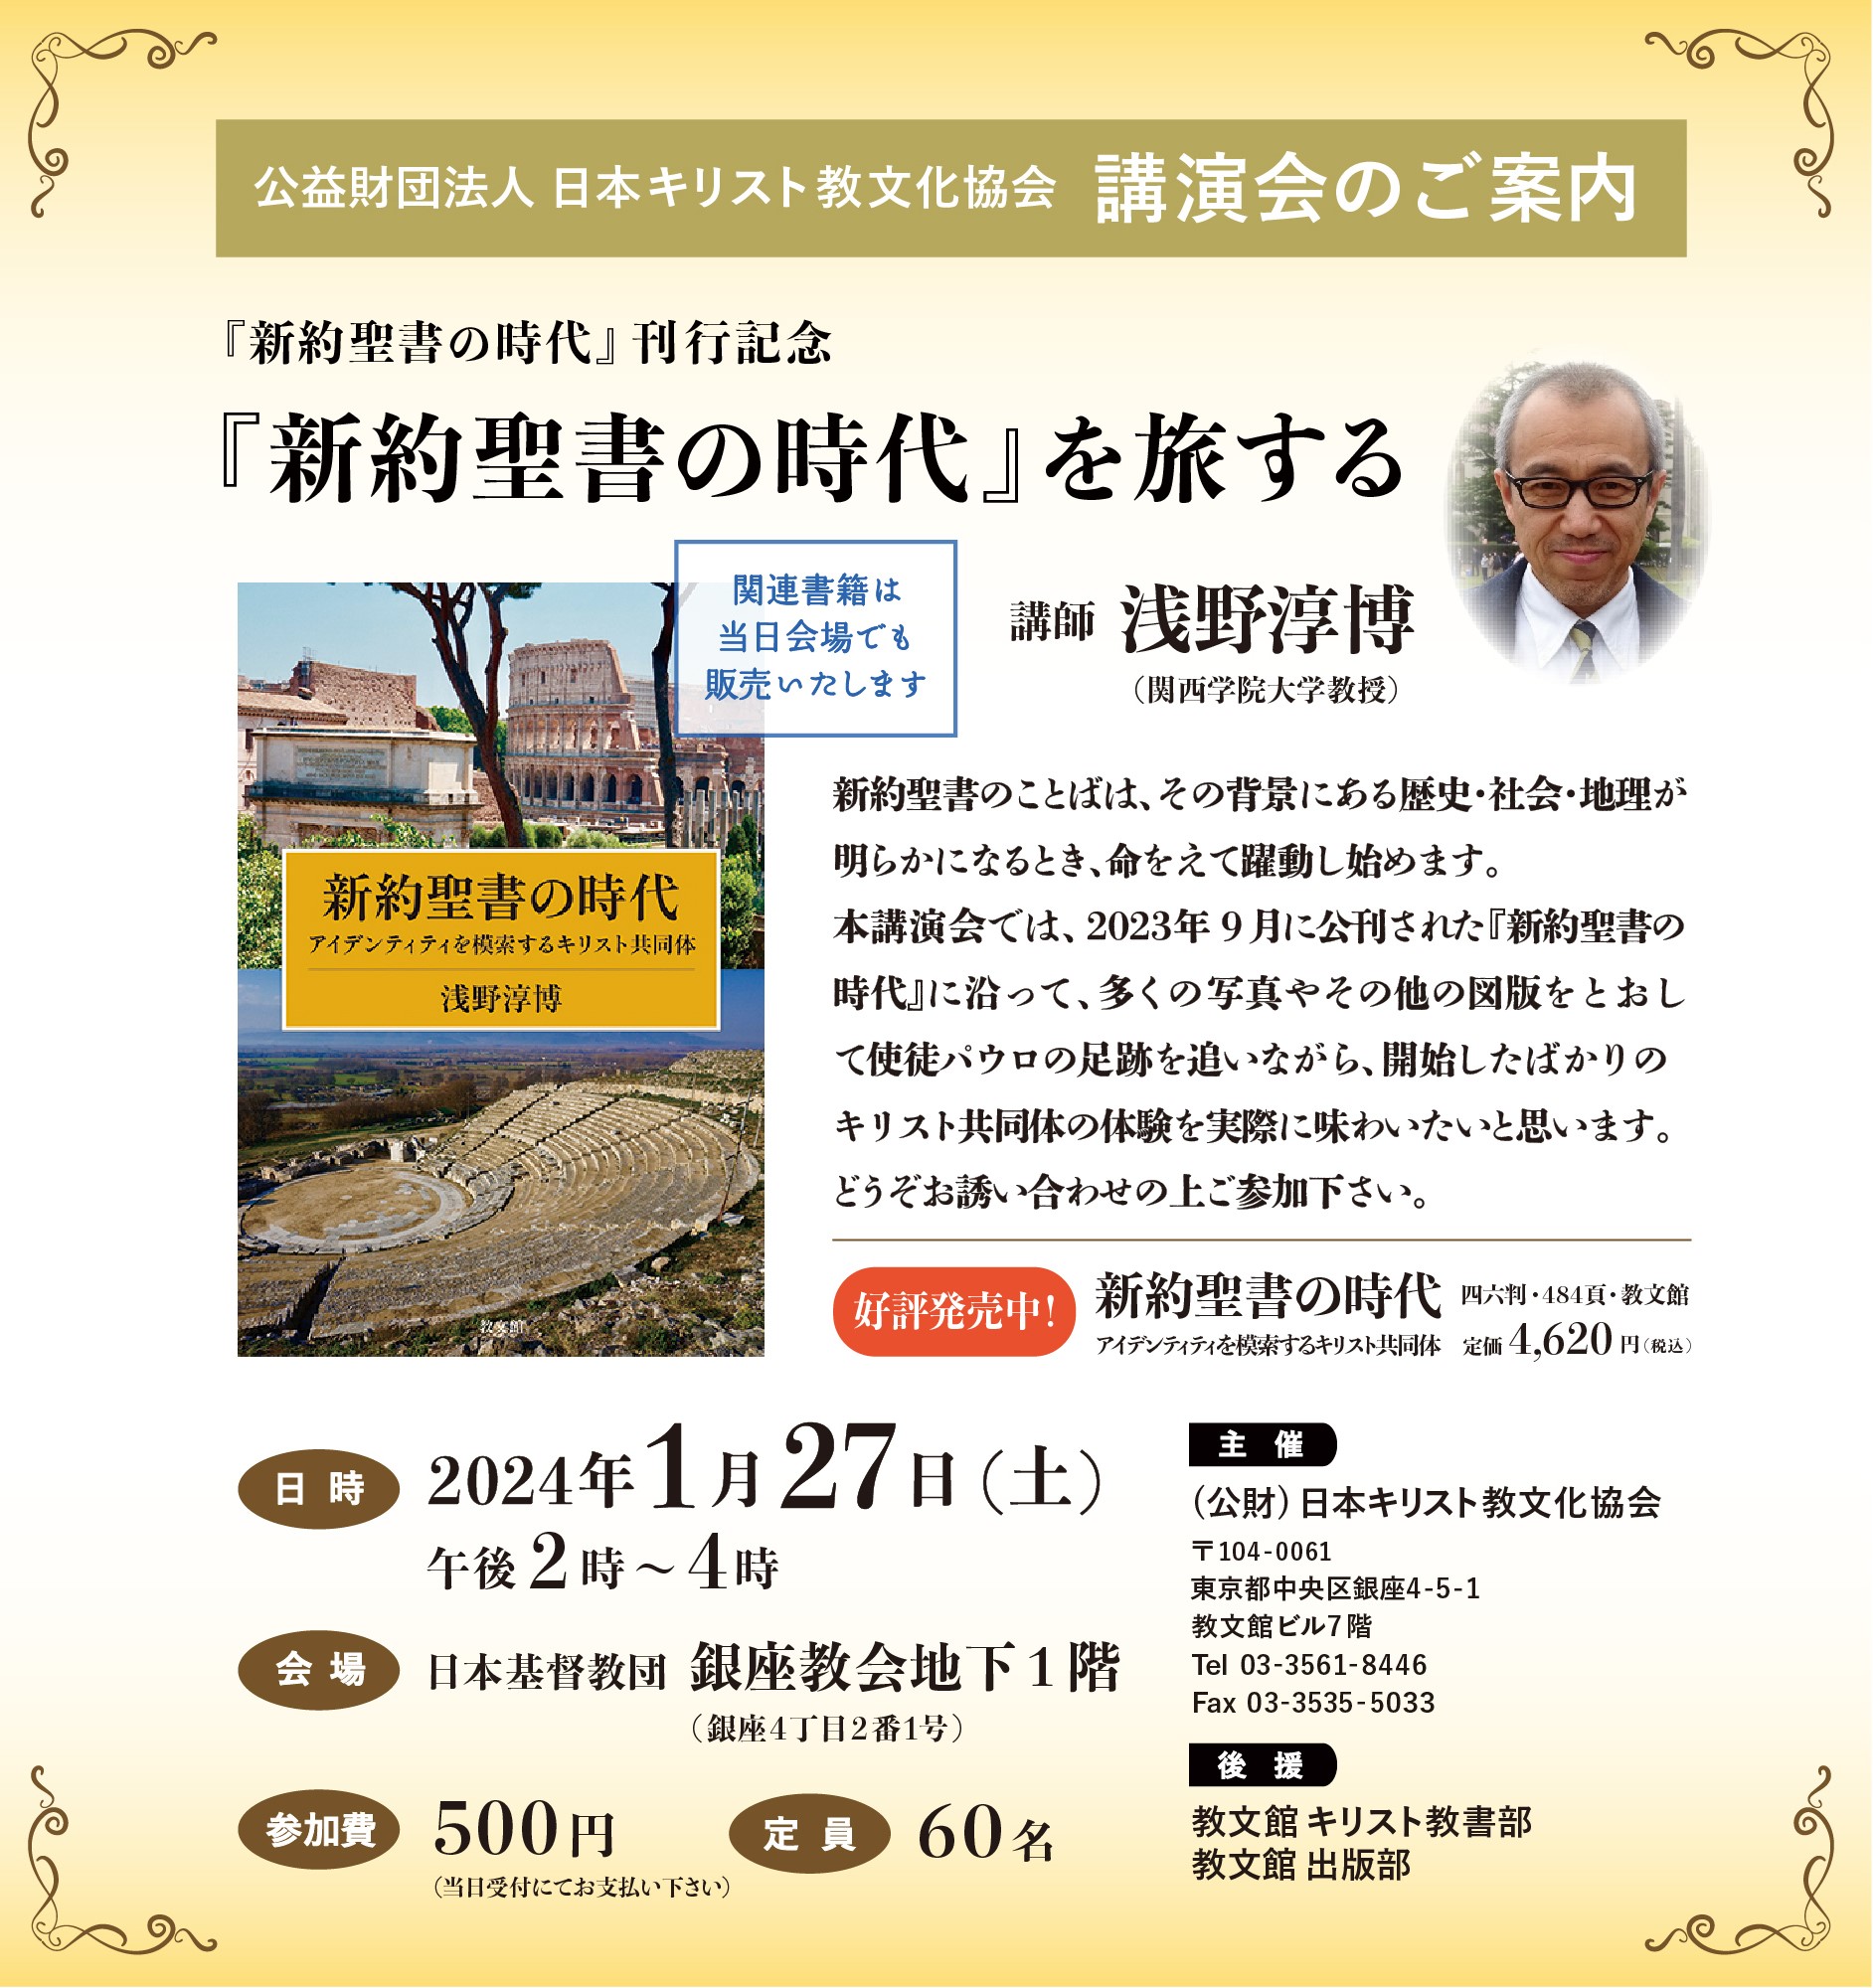 日本キリスト教文化協会講演会『新約聖書の時代』を旅する―『新約聖書の時代』刊行記念